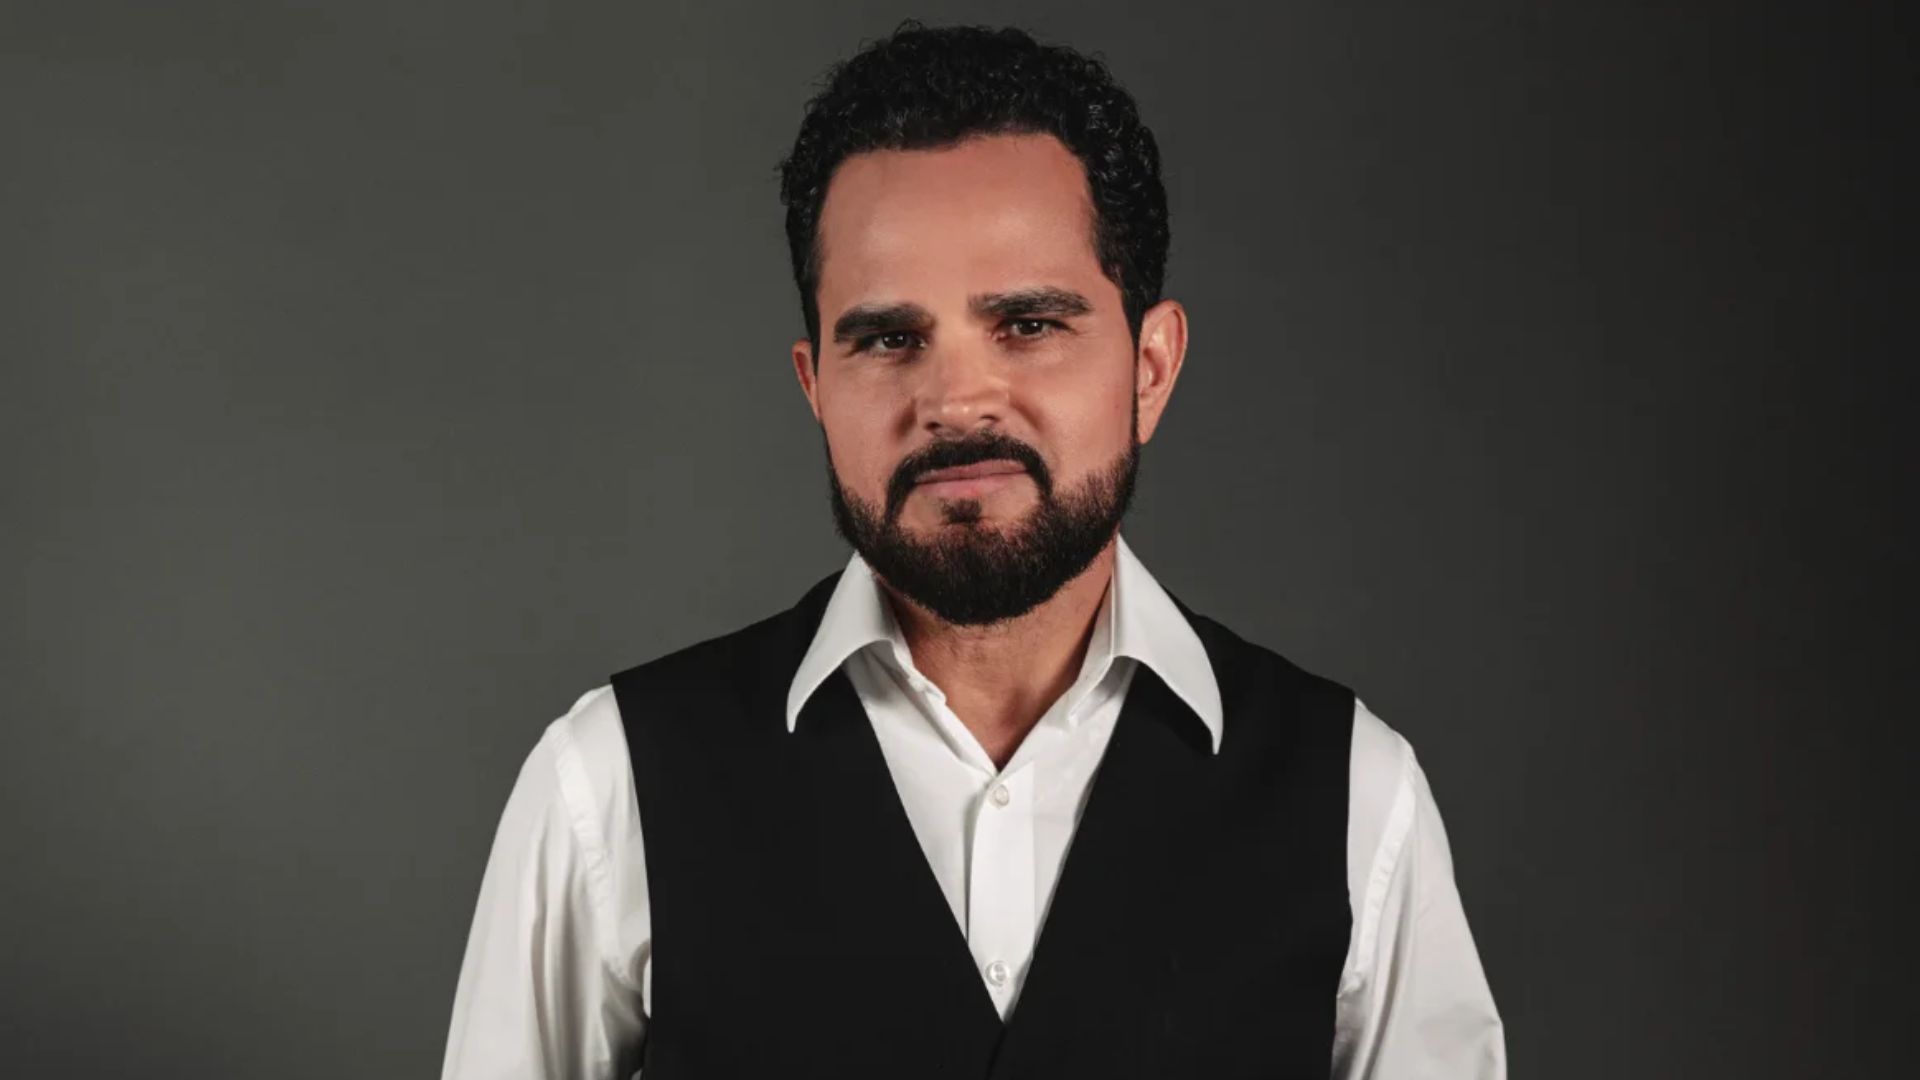 EXCLUSIVA: Luciano Camargo dá detalhes de novo projeto gospel, “Terra Fértil” - Metropolitana FM